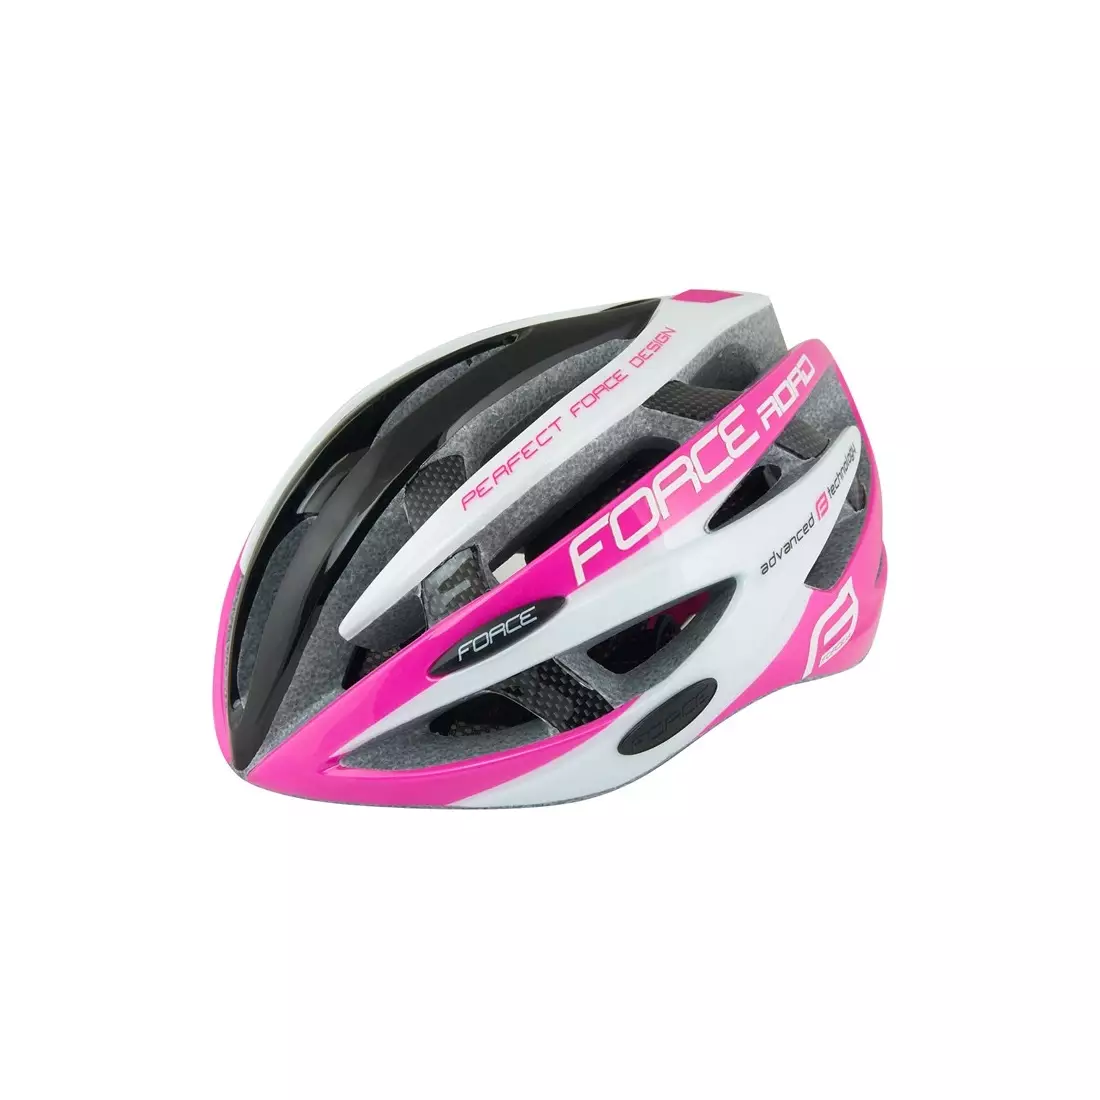 FORCE casca de bicicleta pentru femei, negru și roz 902616